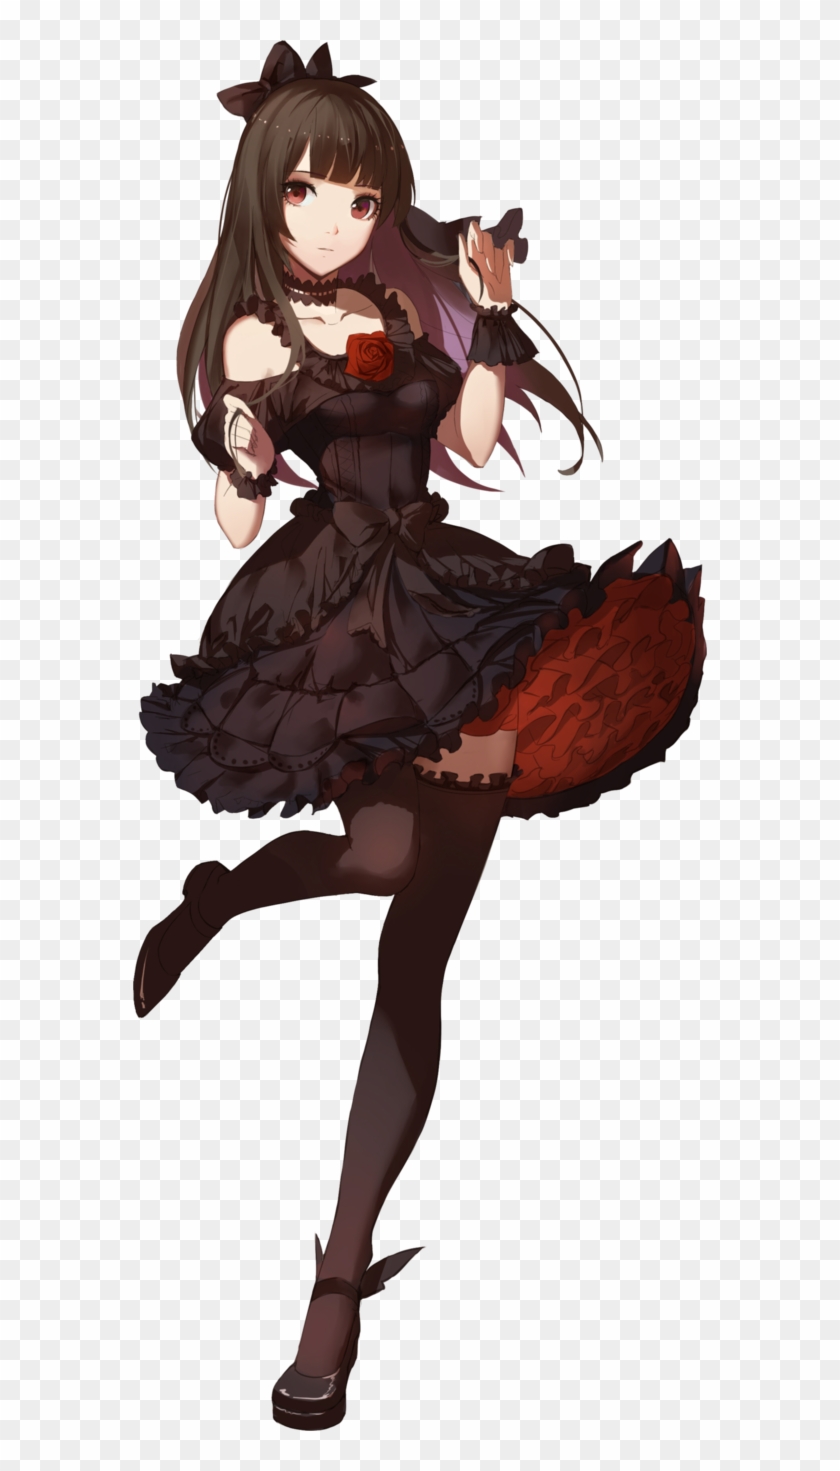 [render] Random Anime Girl By Littlediety - Anime Girl In A Black Dress #1224986